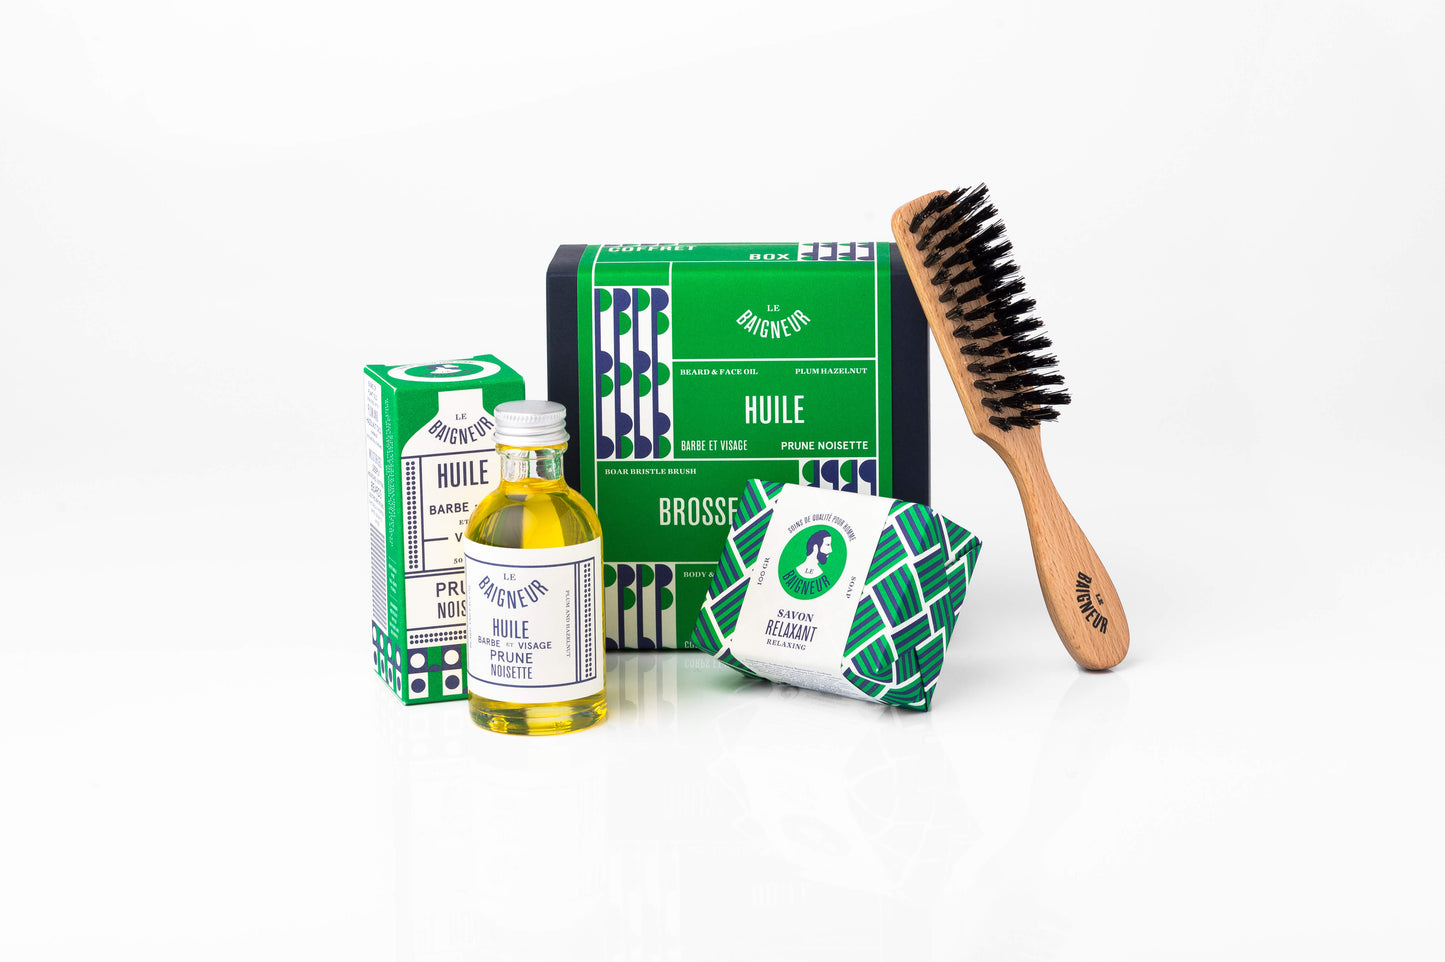 Le Baigneur Coffret trio barbe: Beard gift box sustainable eco present for men